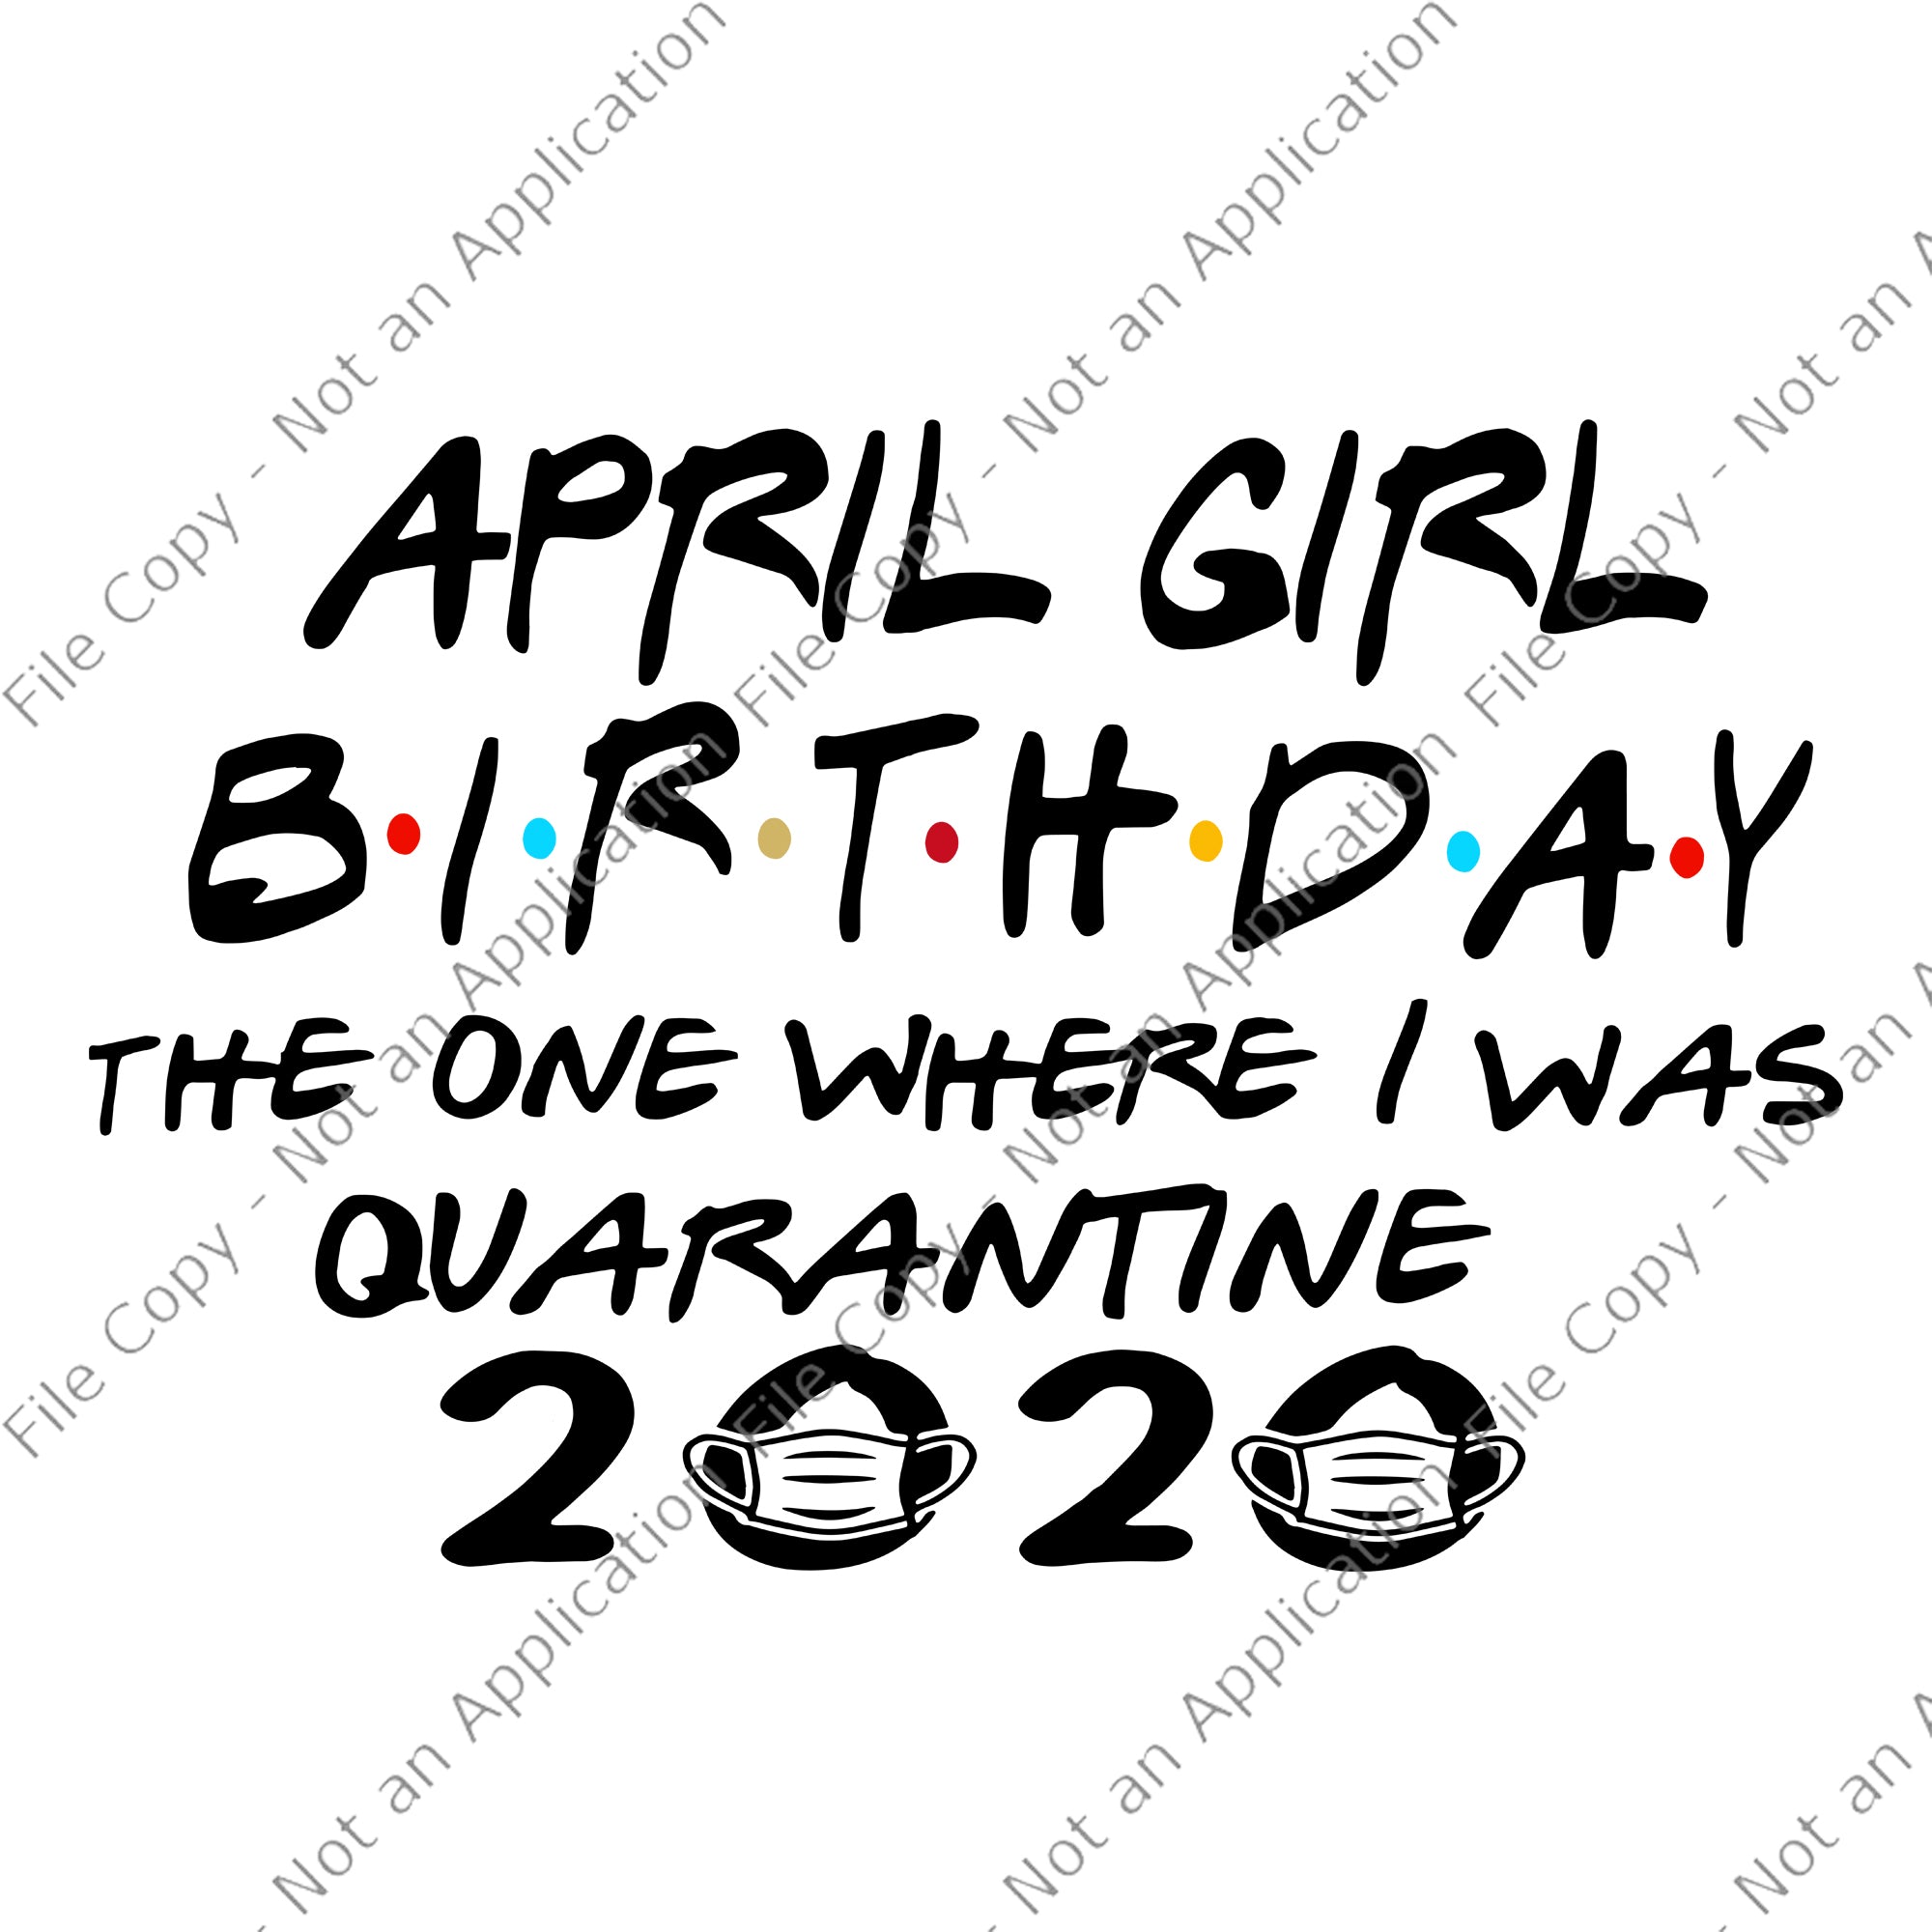 April girl birthday svg, April girl birthday the one where i was quarantine 2020, April girl svg, April girl